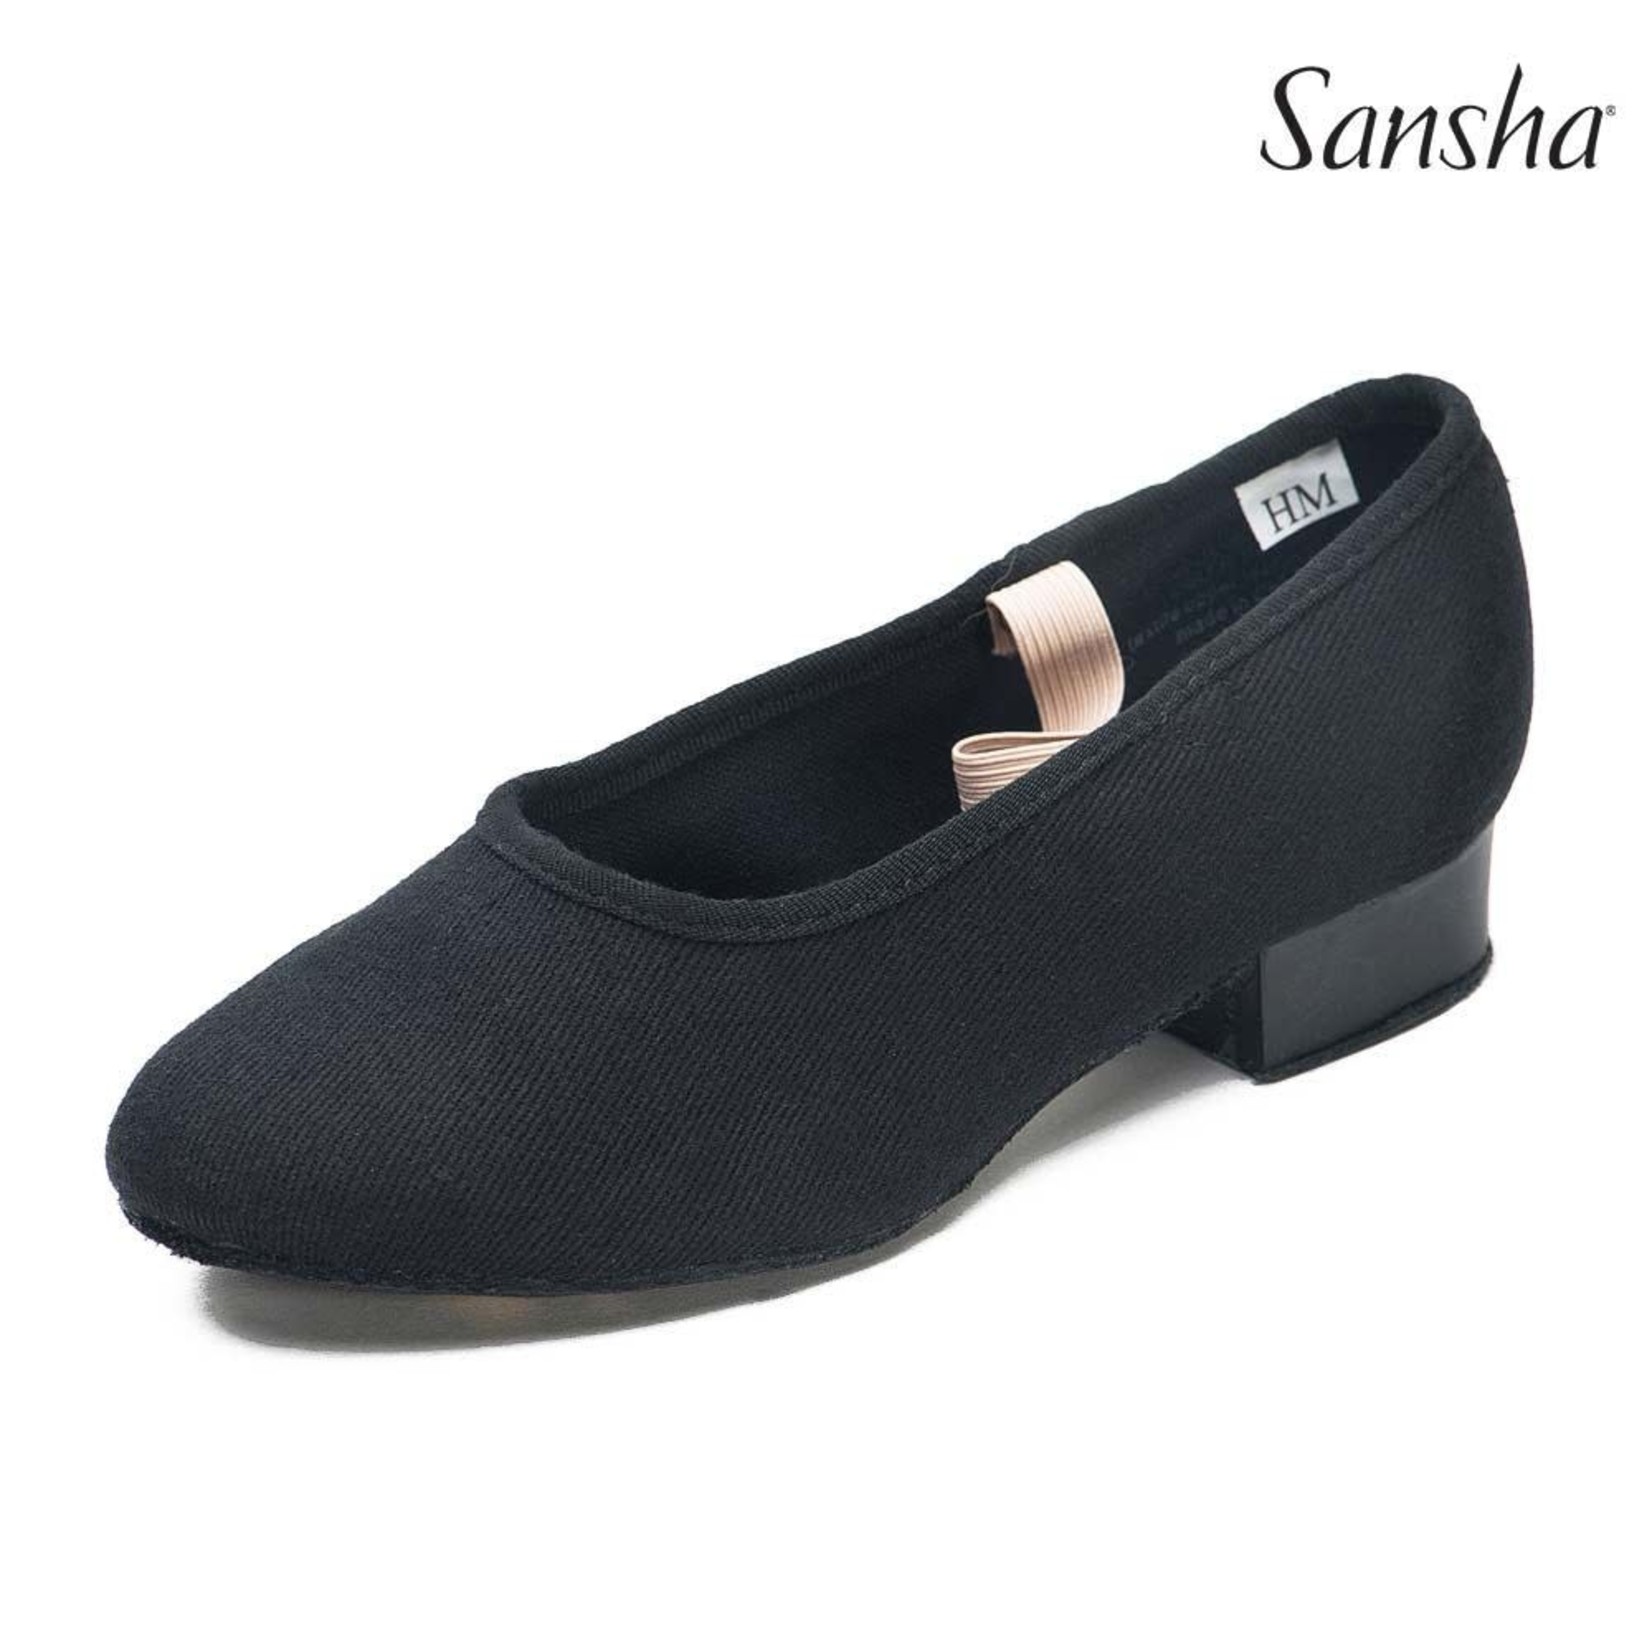 Sansha CS23C POLKA-RONDO youth character shoes